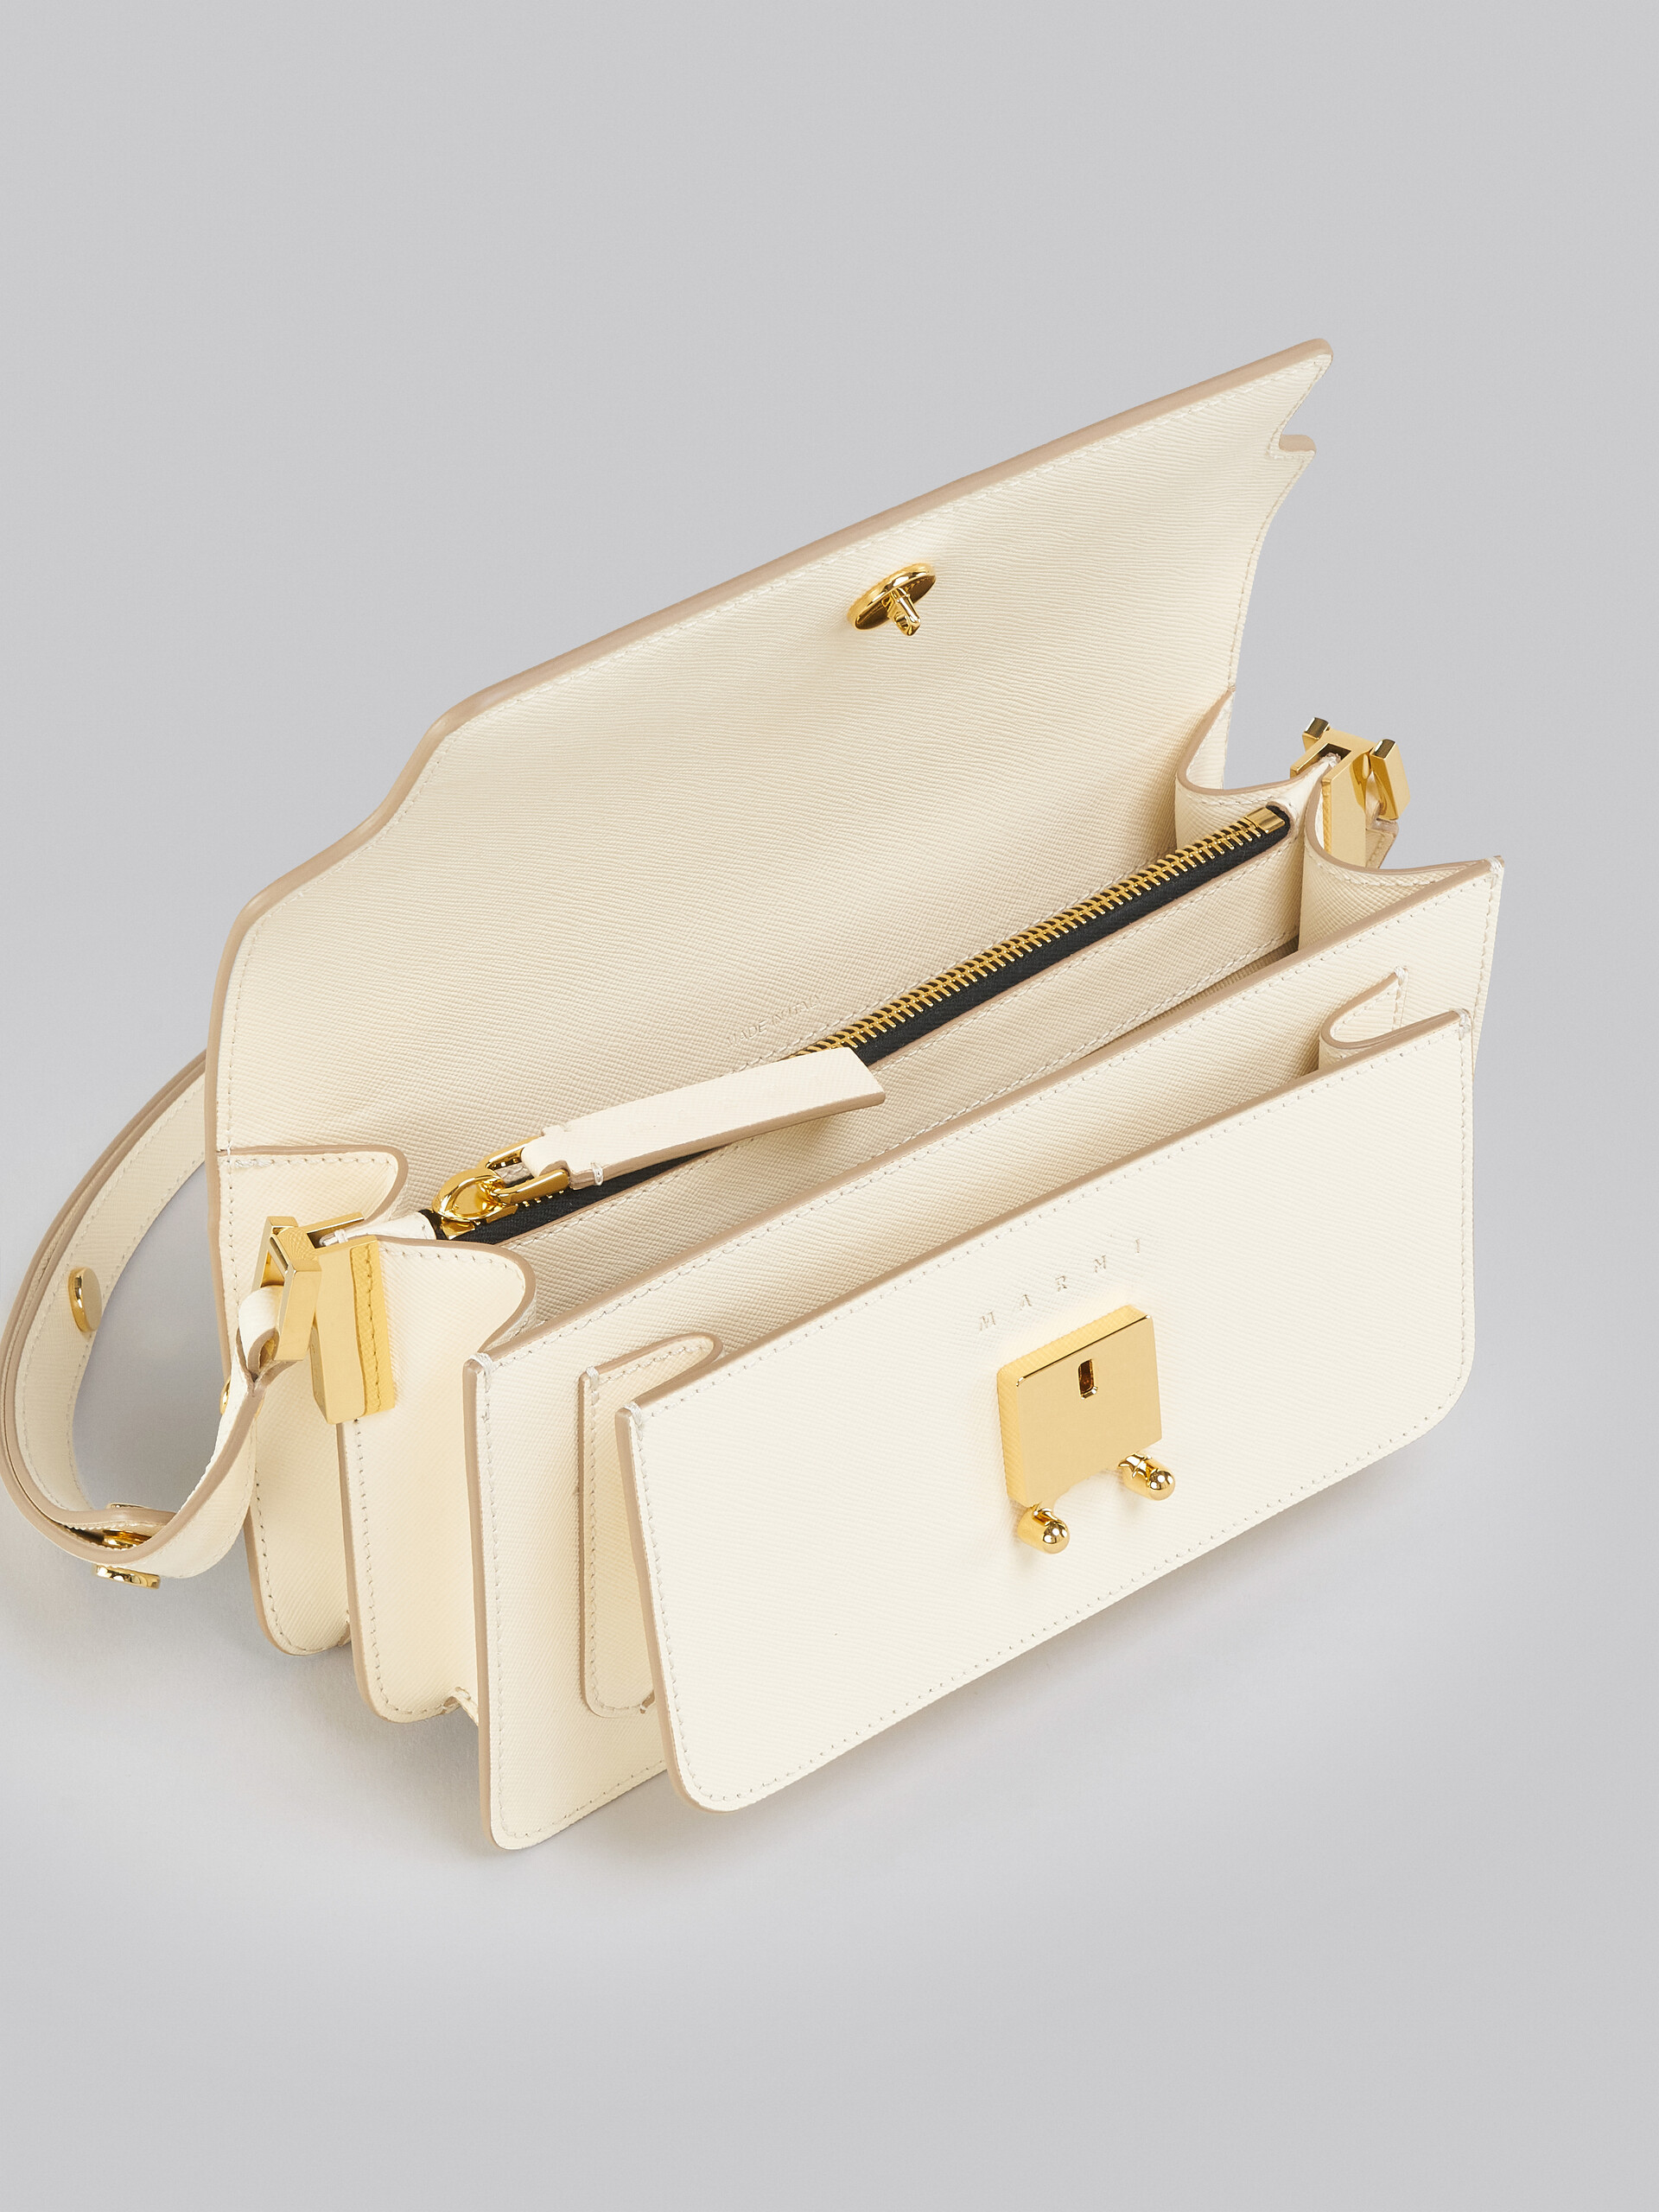 Trunk Bag E/W in pelle saffiano bianca - Borse a spalla - Image 4